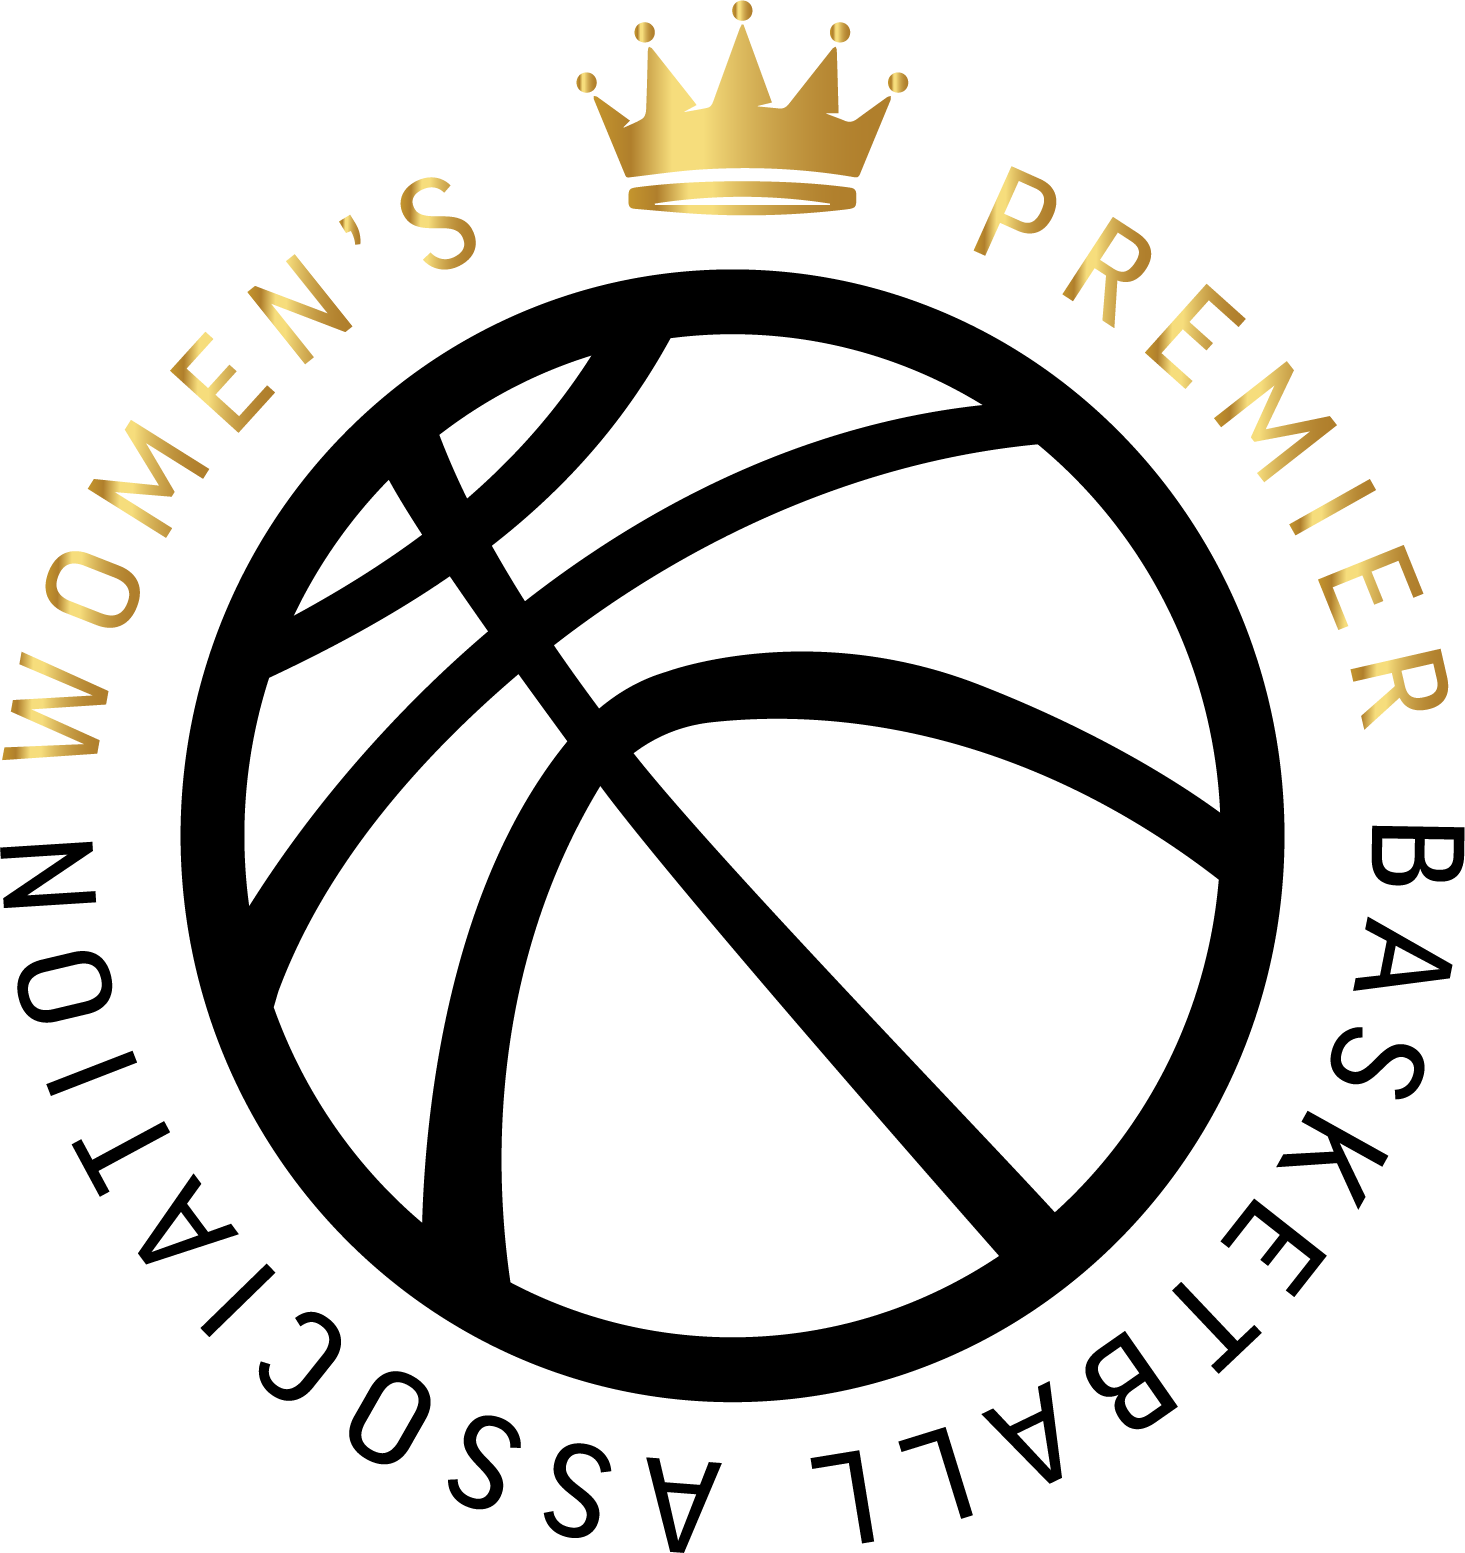 Women's Premier Basketball Association